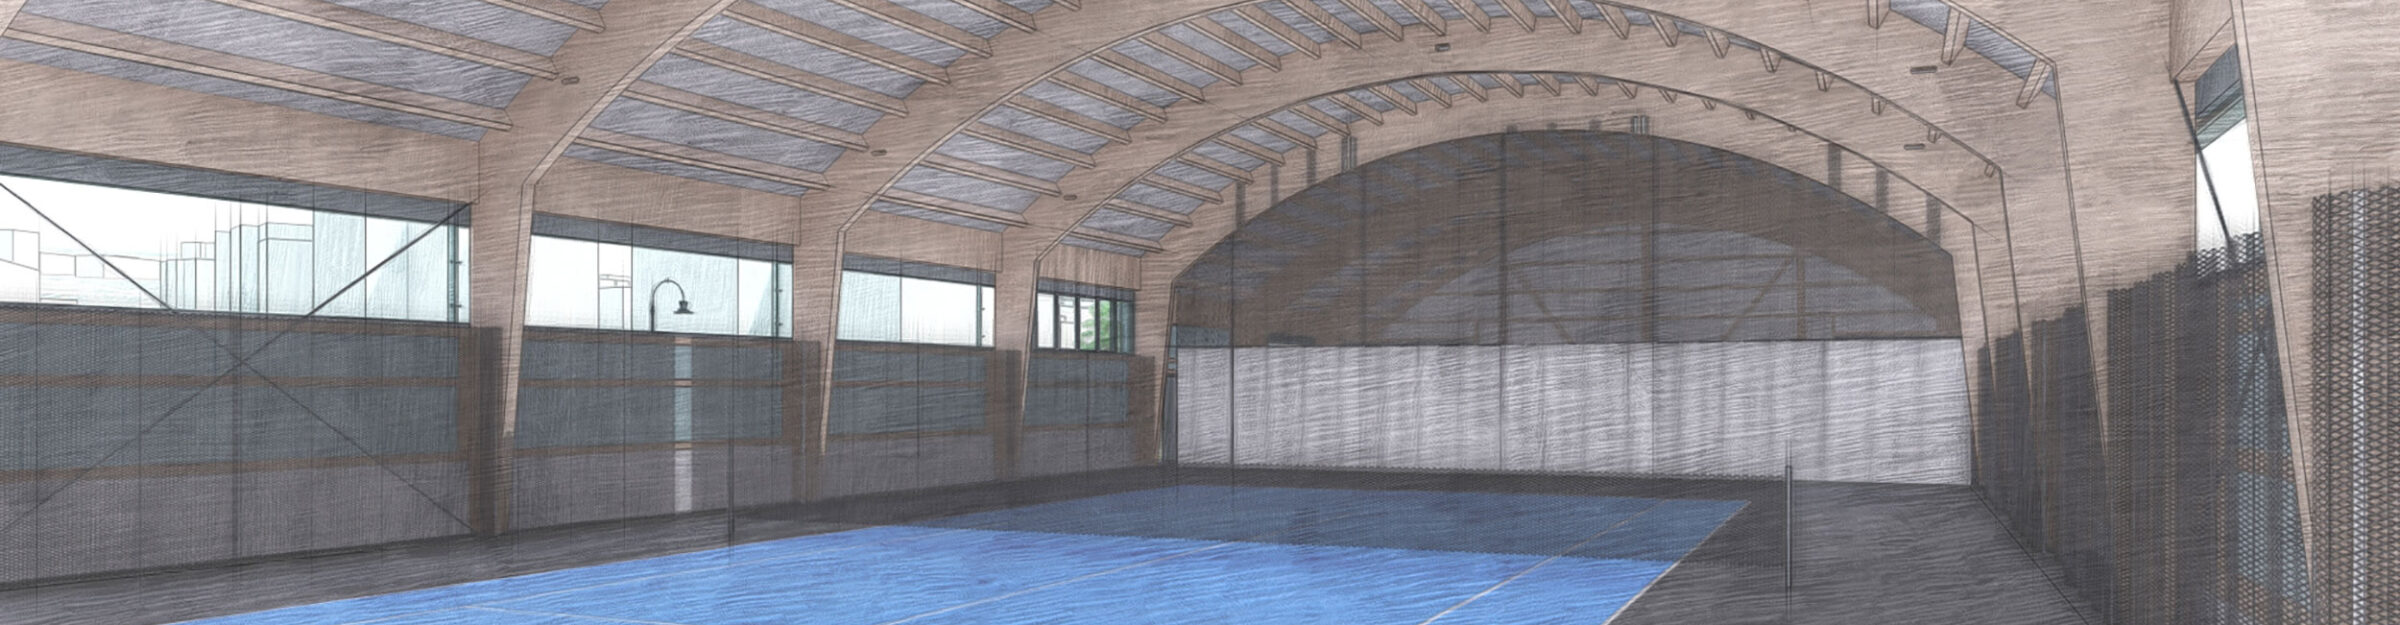 Visualisierung Sport- und Tennishalle, Hallen Tennisclub Lengg, Zürich ZH